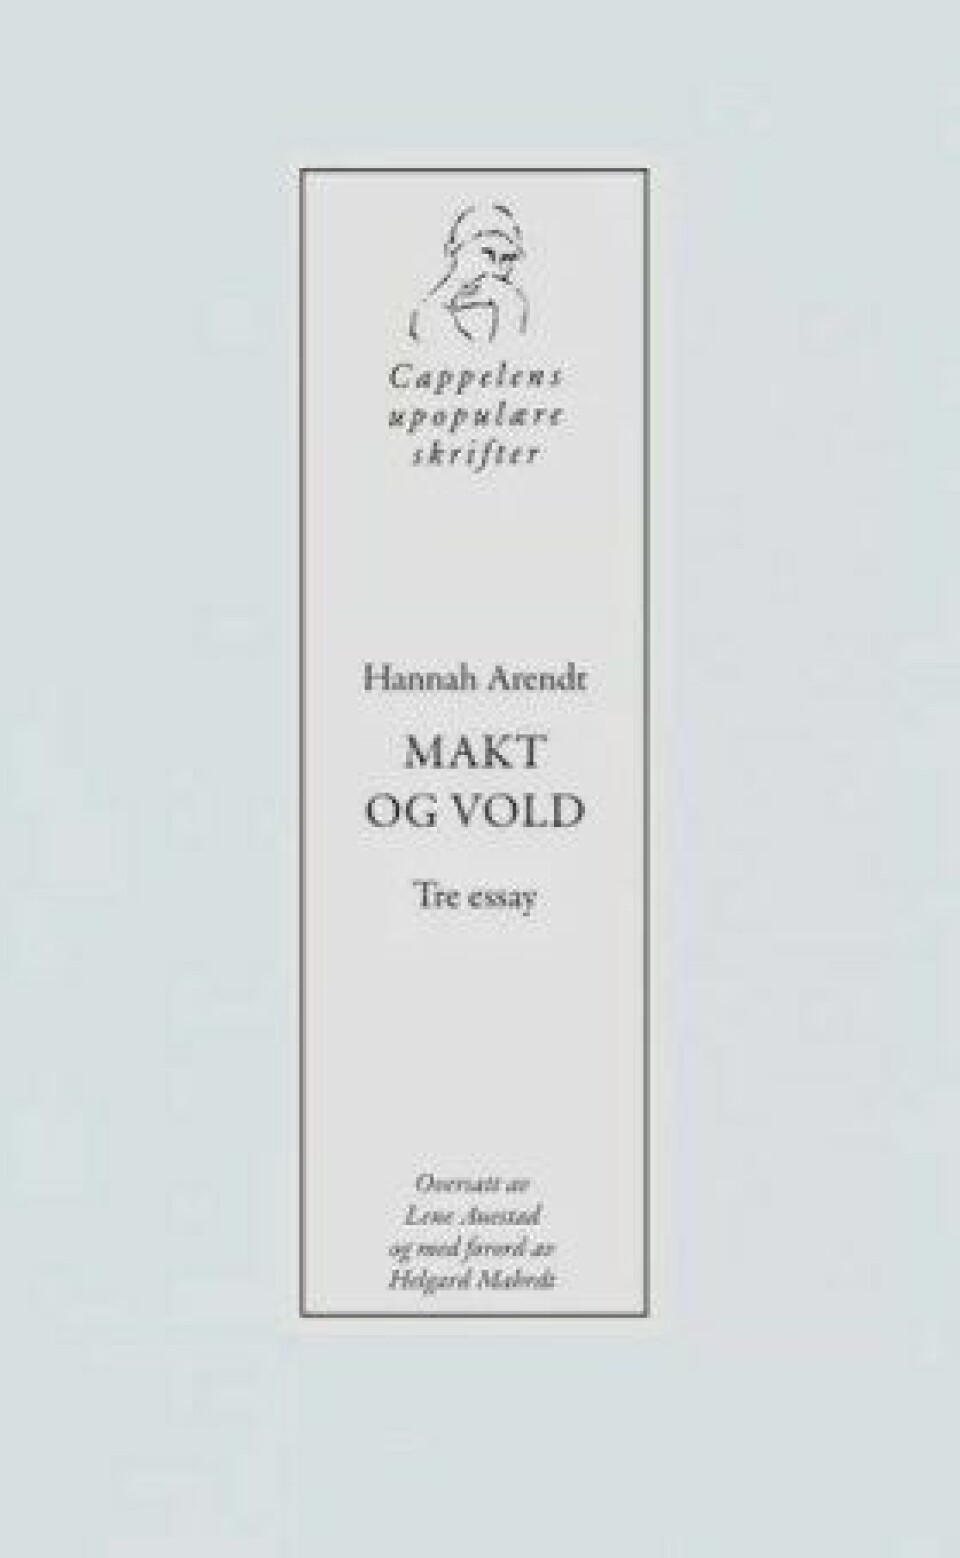 Makt og vold – Tre essays av Hannah Arendt. Oversatt av Lene Auestad og med forord av Helard Mahrdt, Cappelen Damm 2017.